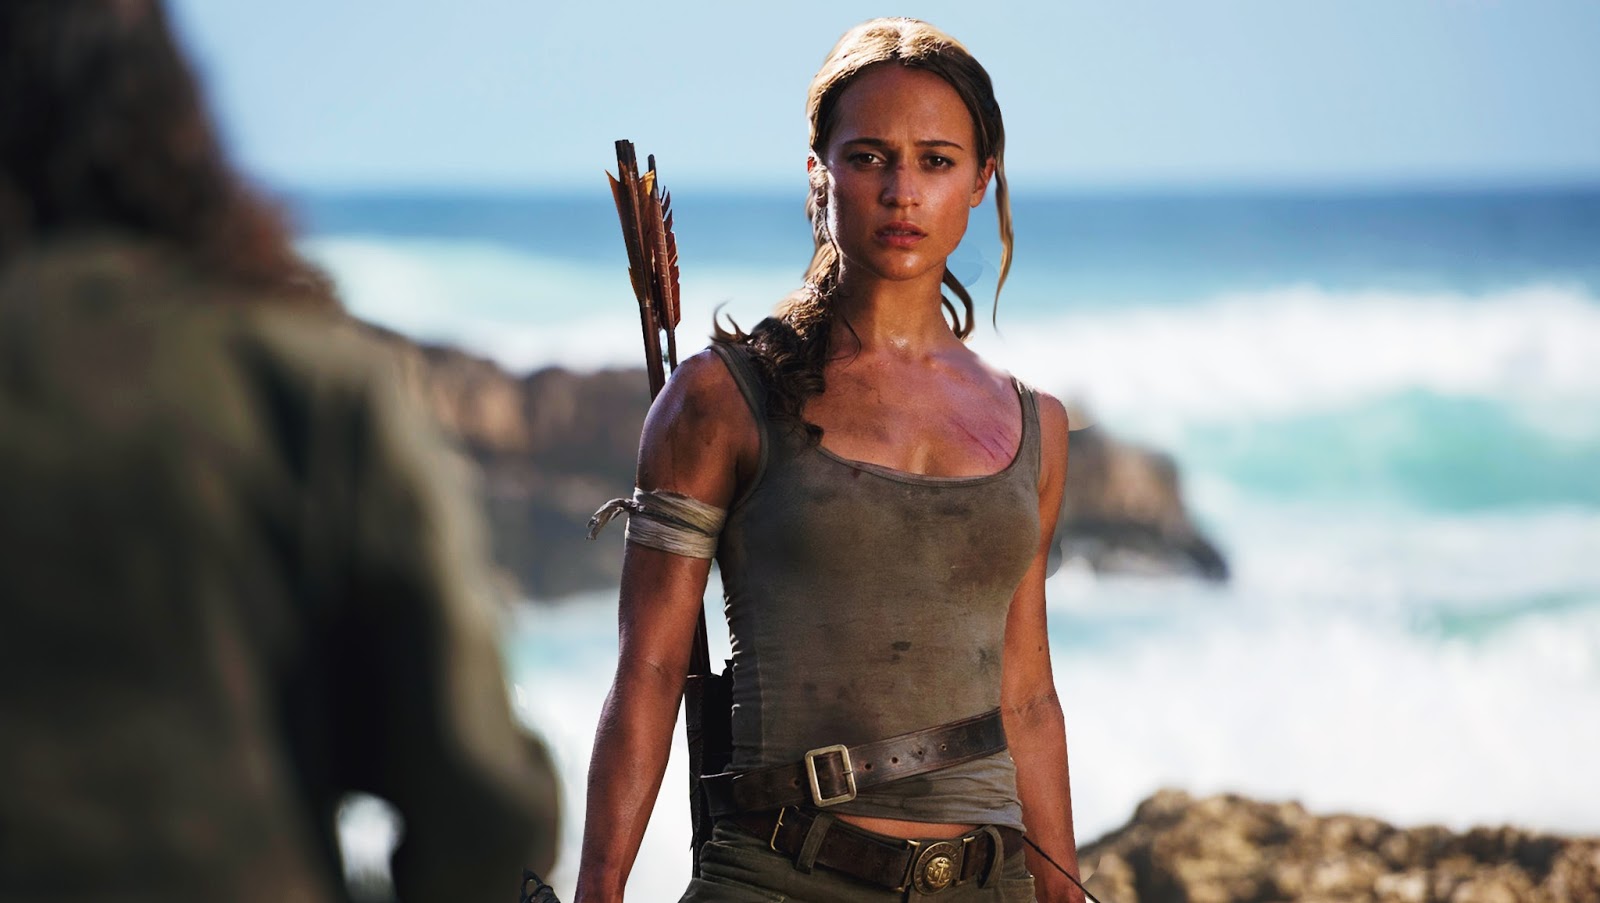 Atores do novo filme TOMB RAIDER despedem-se das filmagens! - LARA CROFT  PT: Fansite de Tomb Raider oficializado e premiado